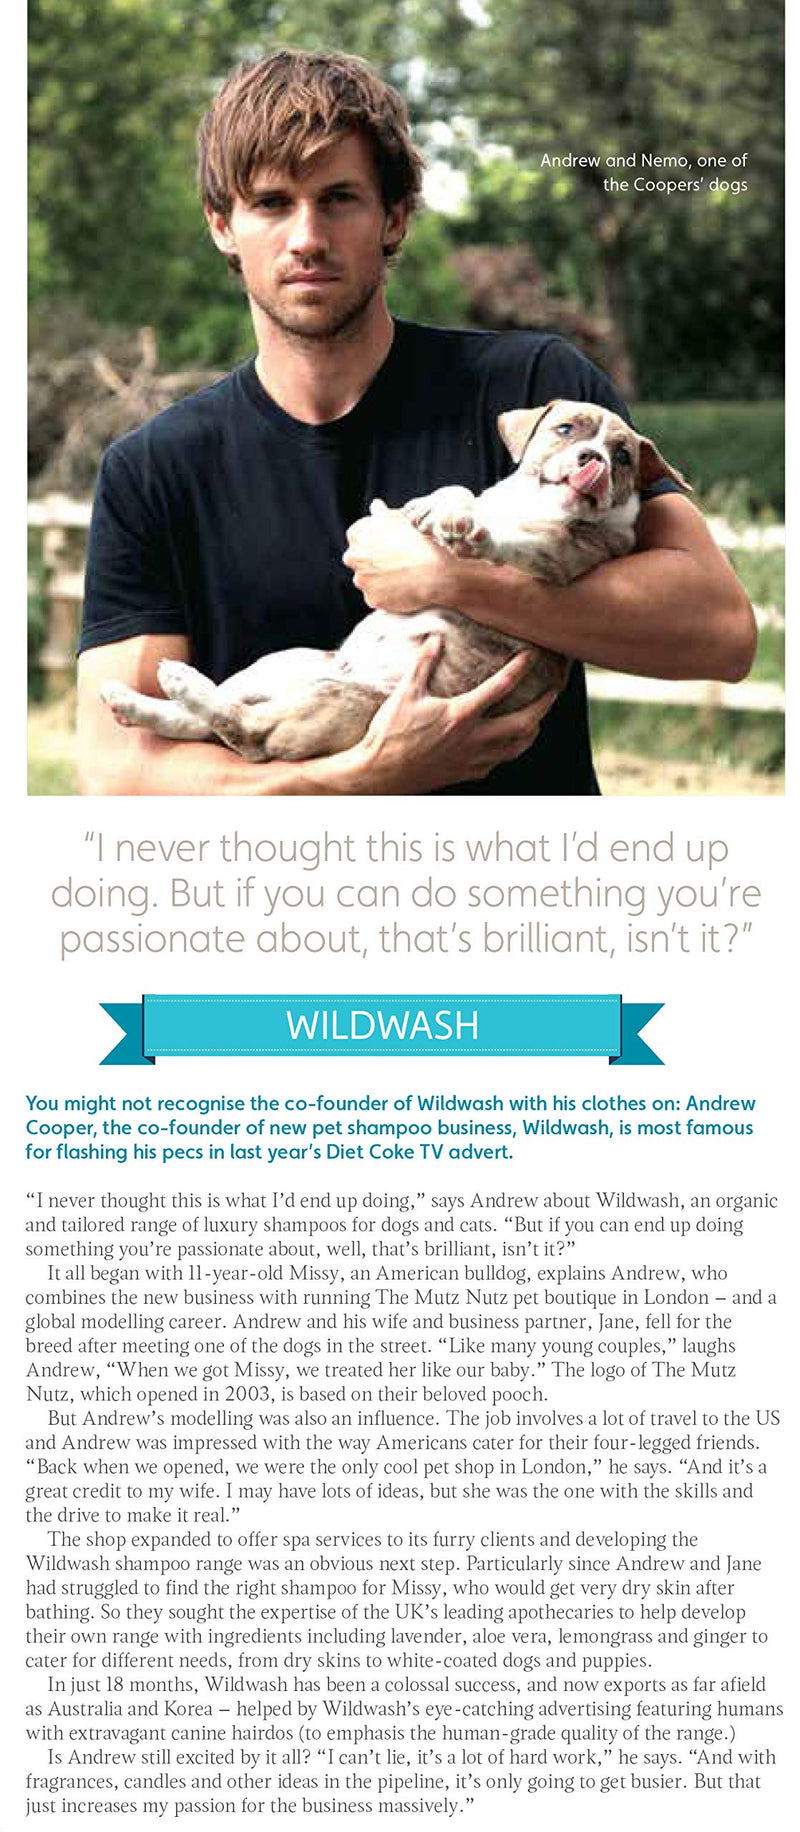 WildWash Detangle Spray, 300 ml - PawsPlanet Australia